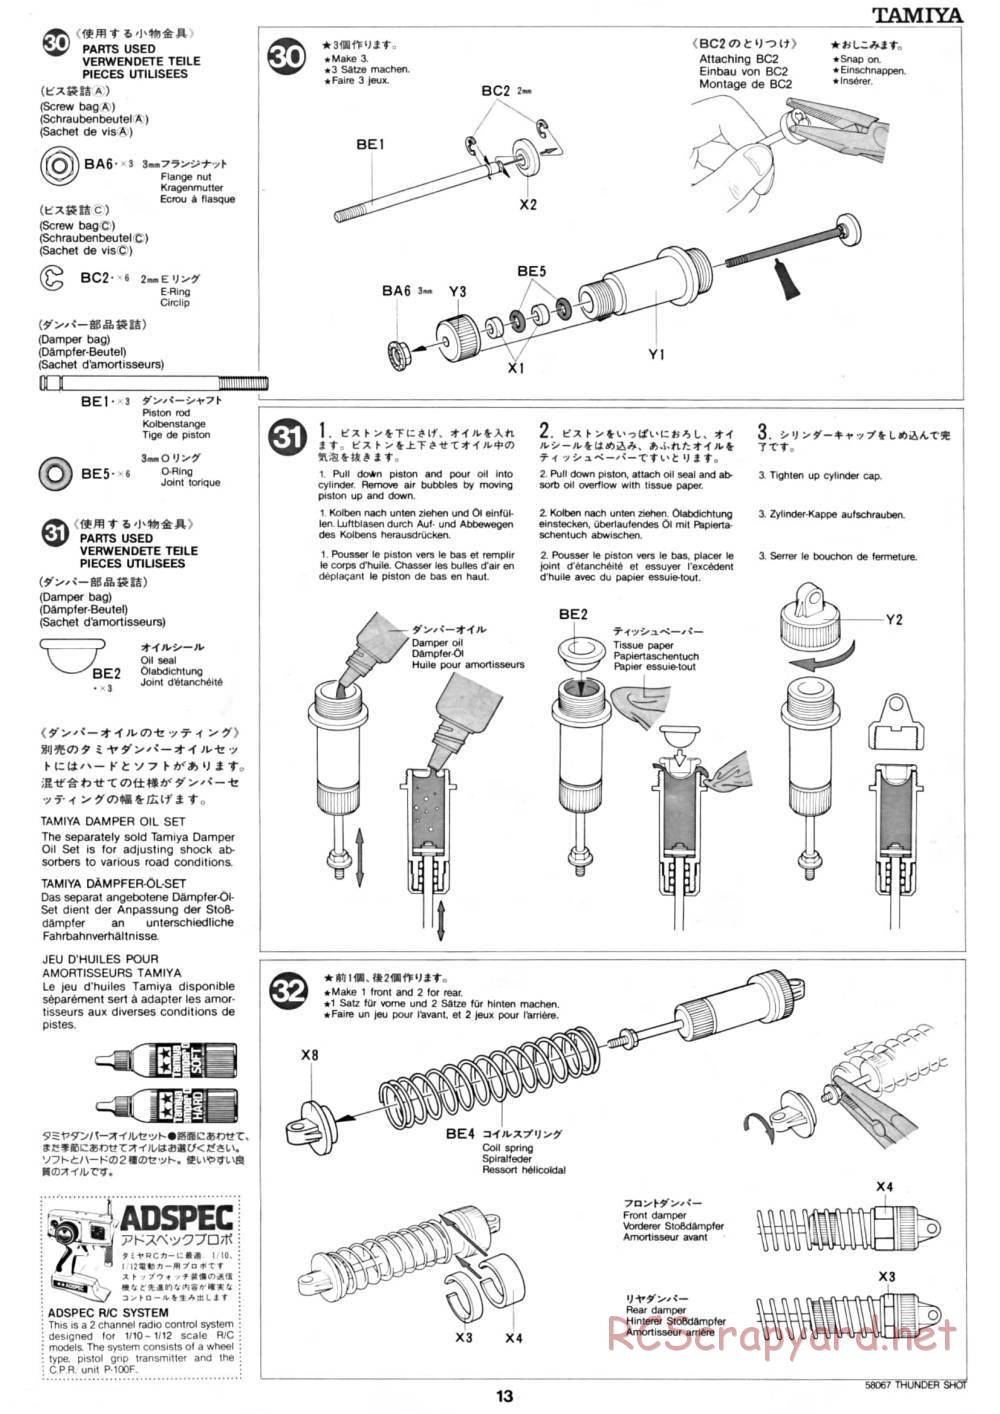 Tamiya - Thunder Shot - 58067 - Manual - Page 13